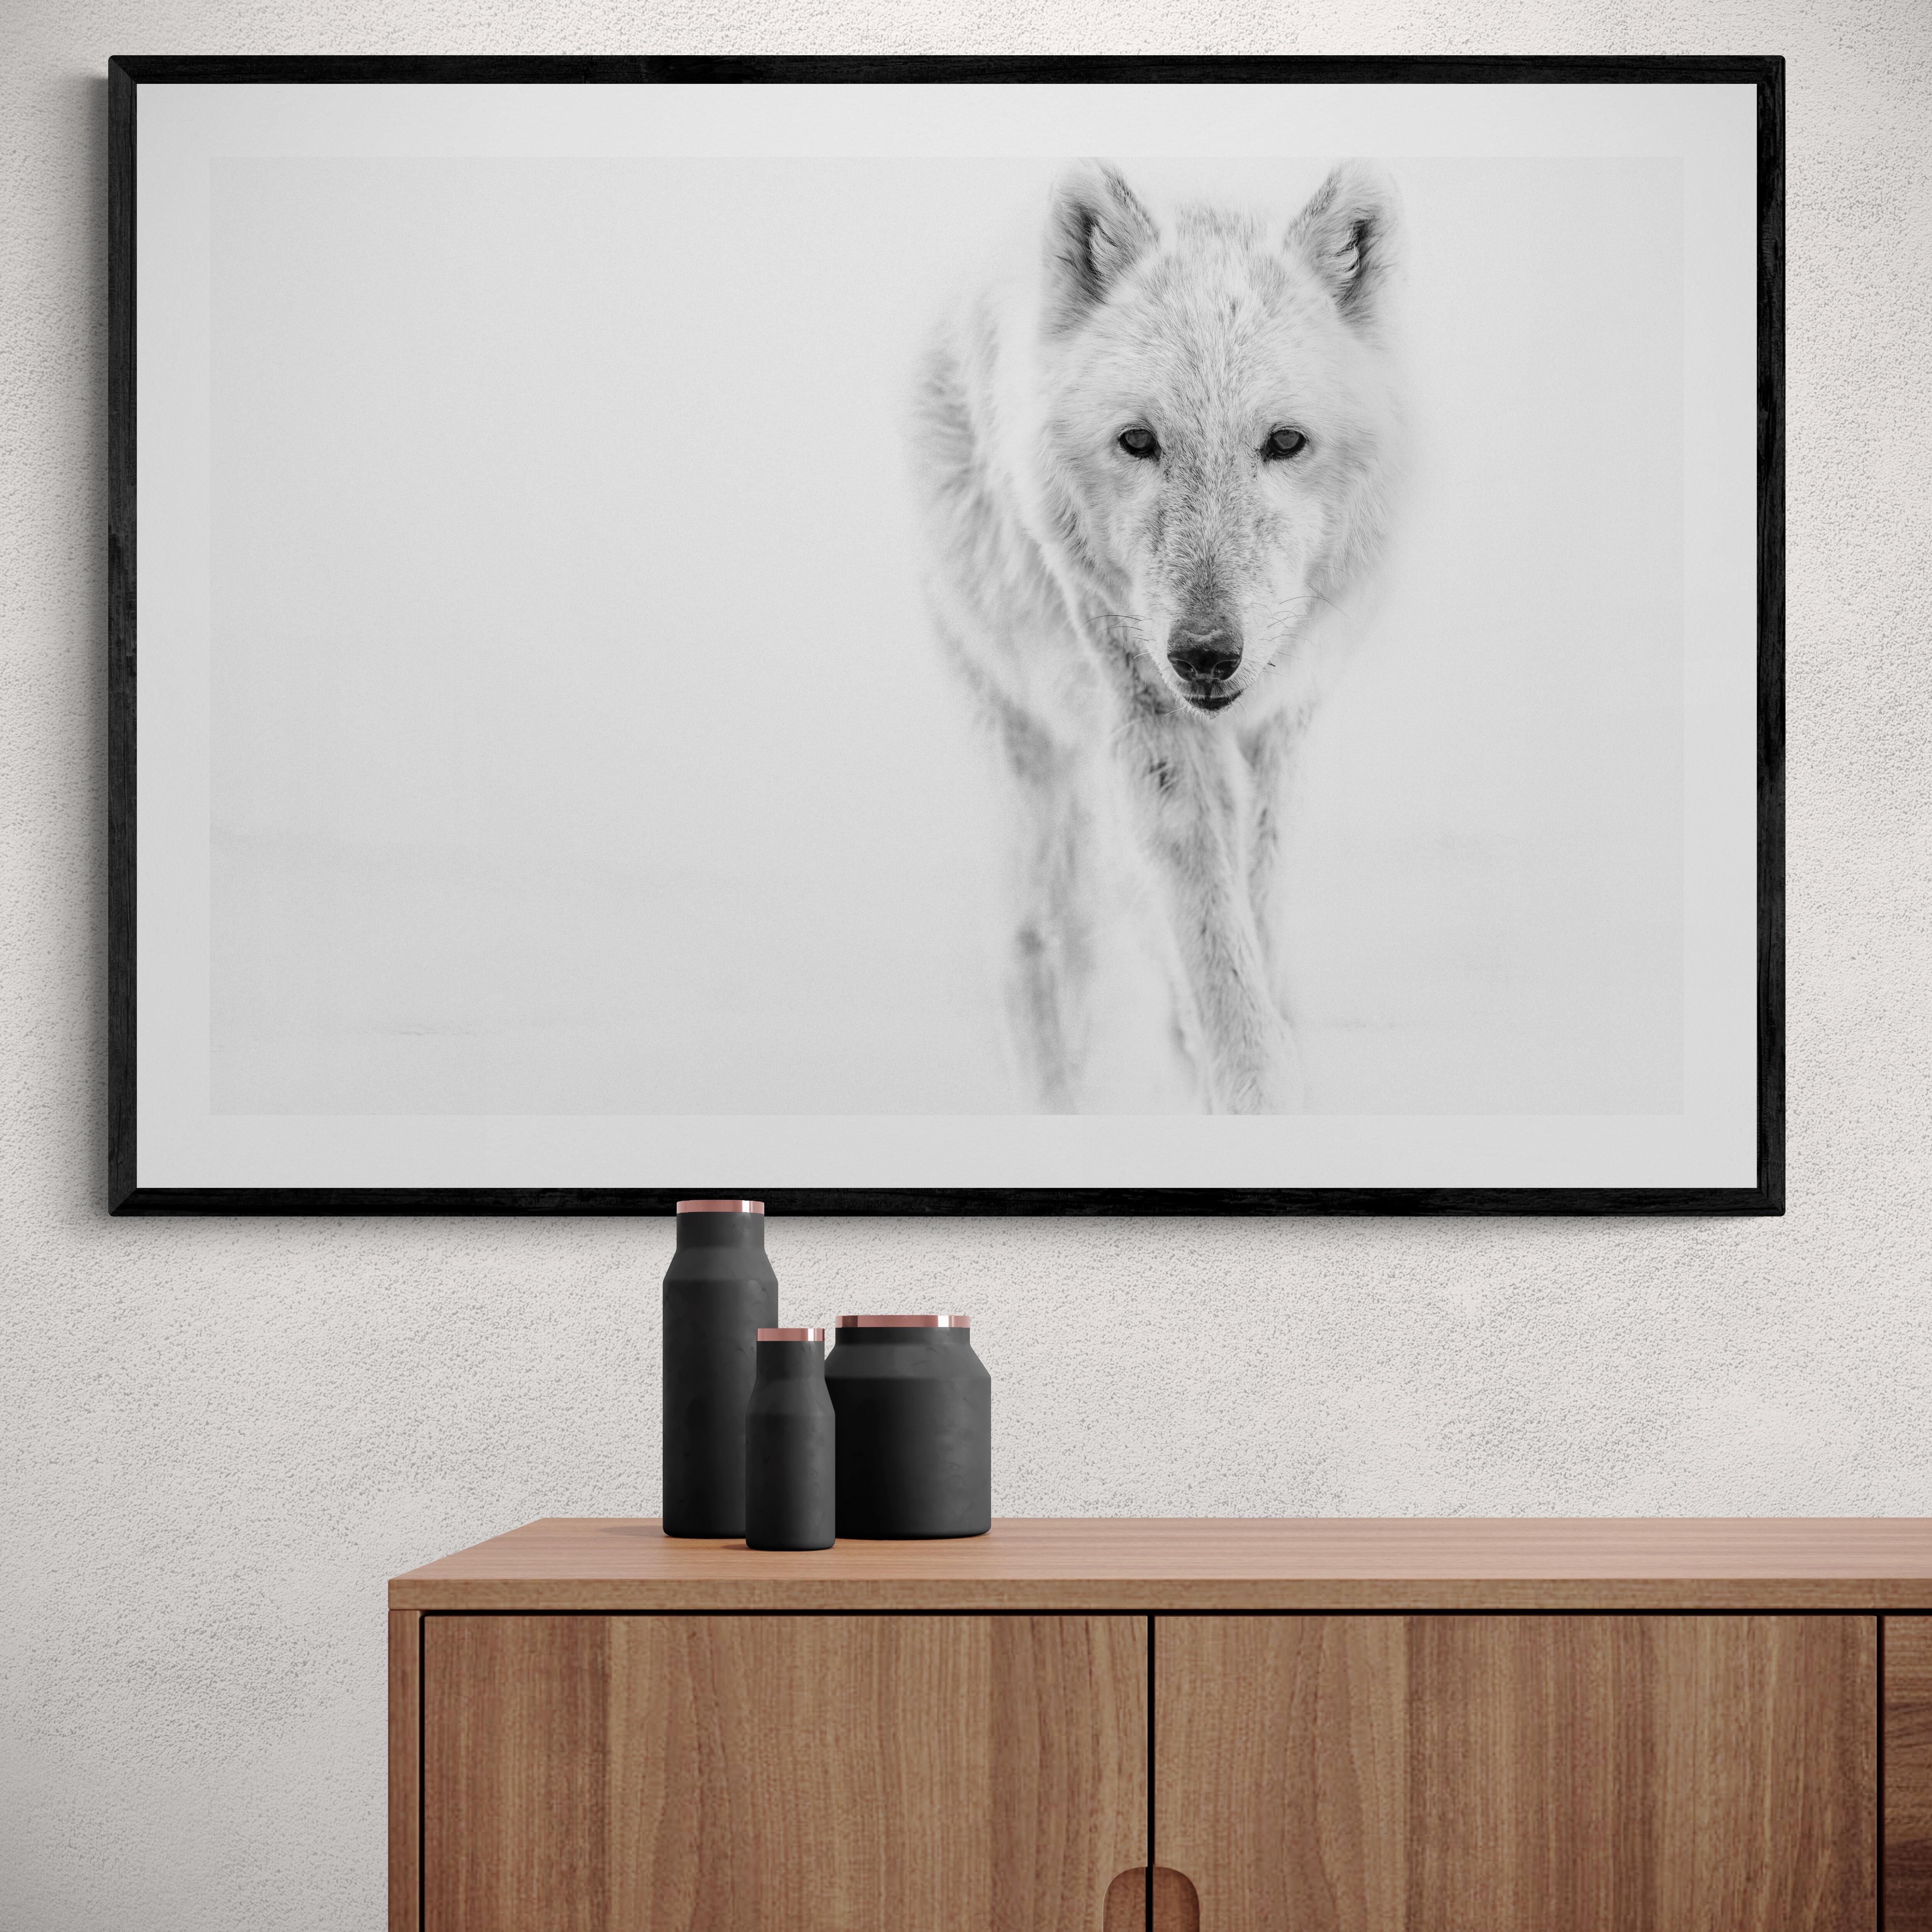 Se trata de una fotografía contemporánea en blanco y negro de un lobo ártico... 
Impreso en papel de archivo utilizando únicamente tinta de archivo. 
Marco disponible. Consulte tarifas. 

 Shane Russeck se ha forjado una reputación por captar los